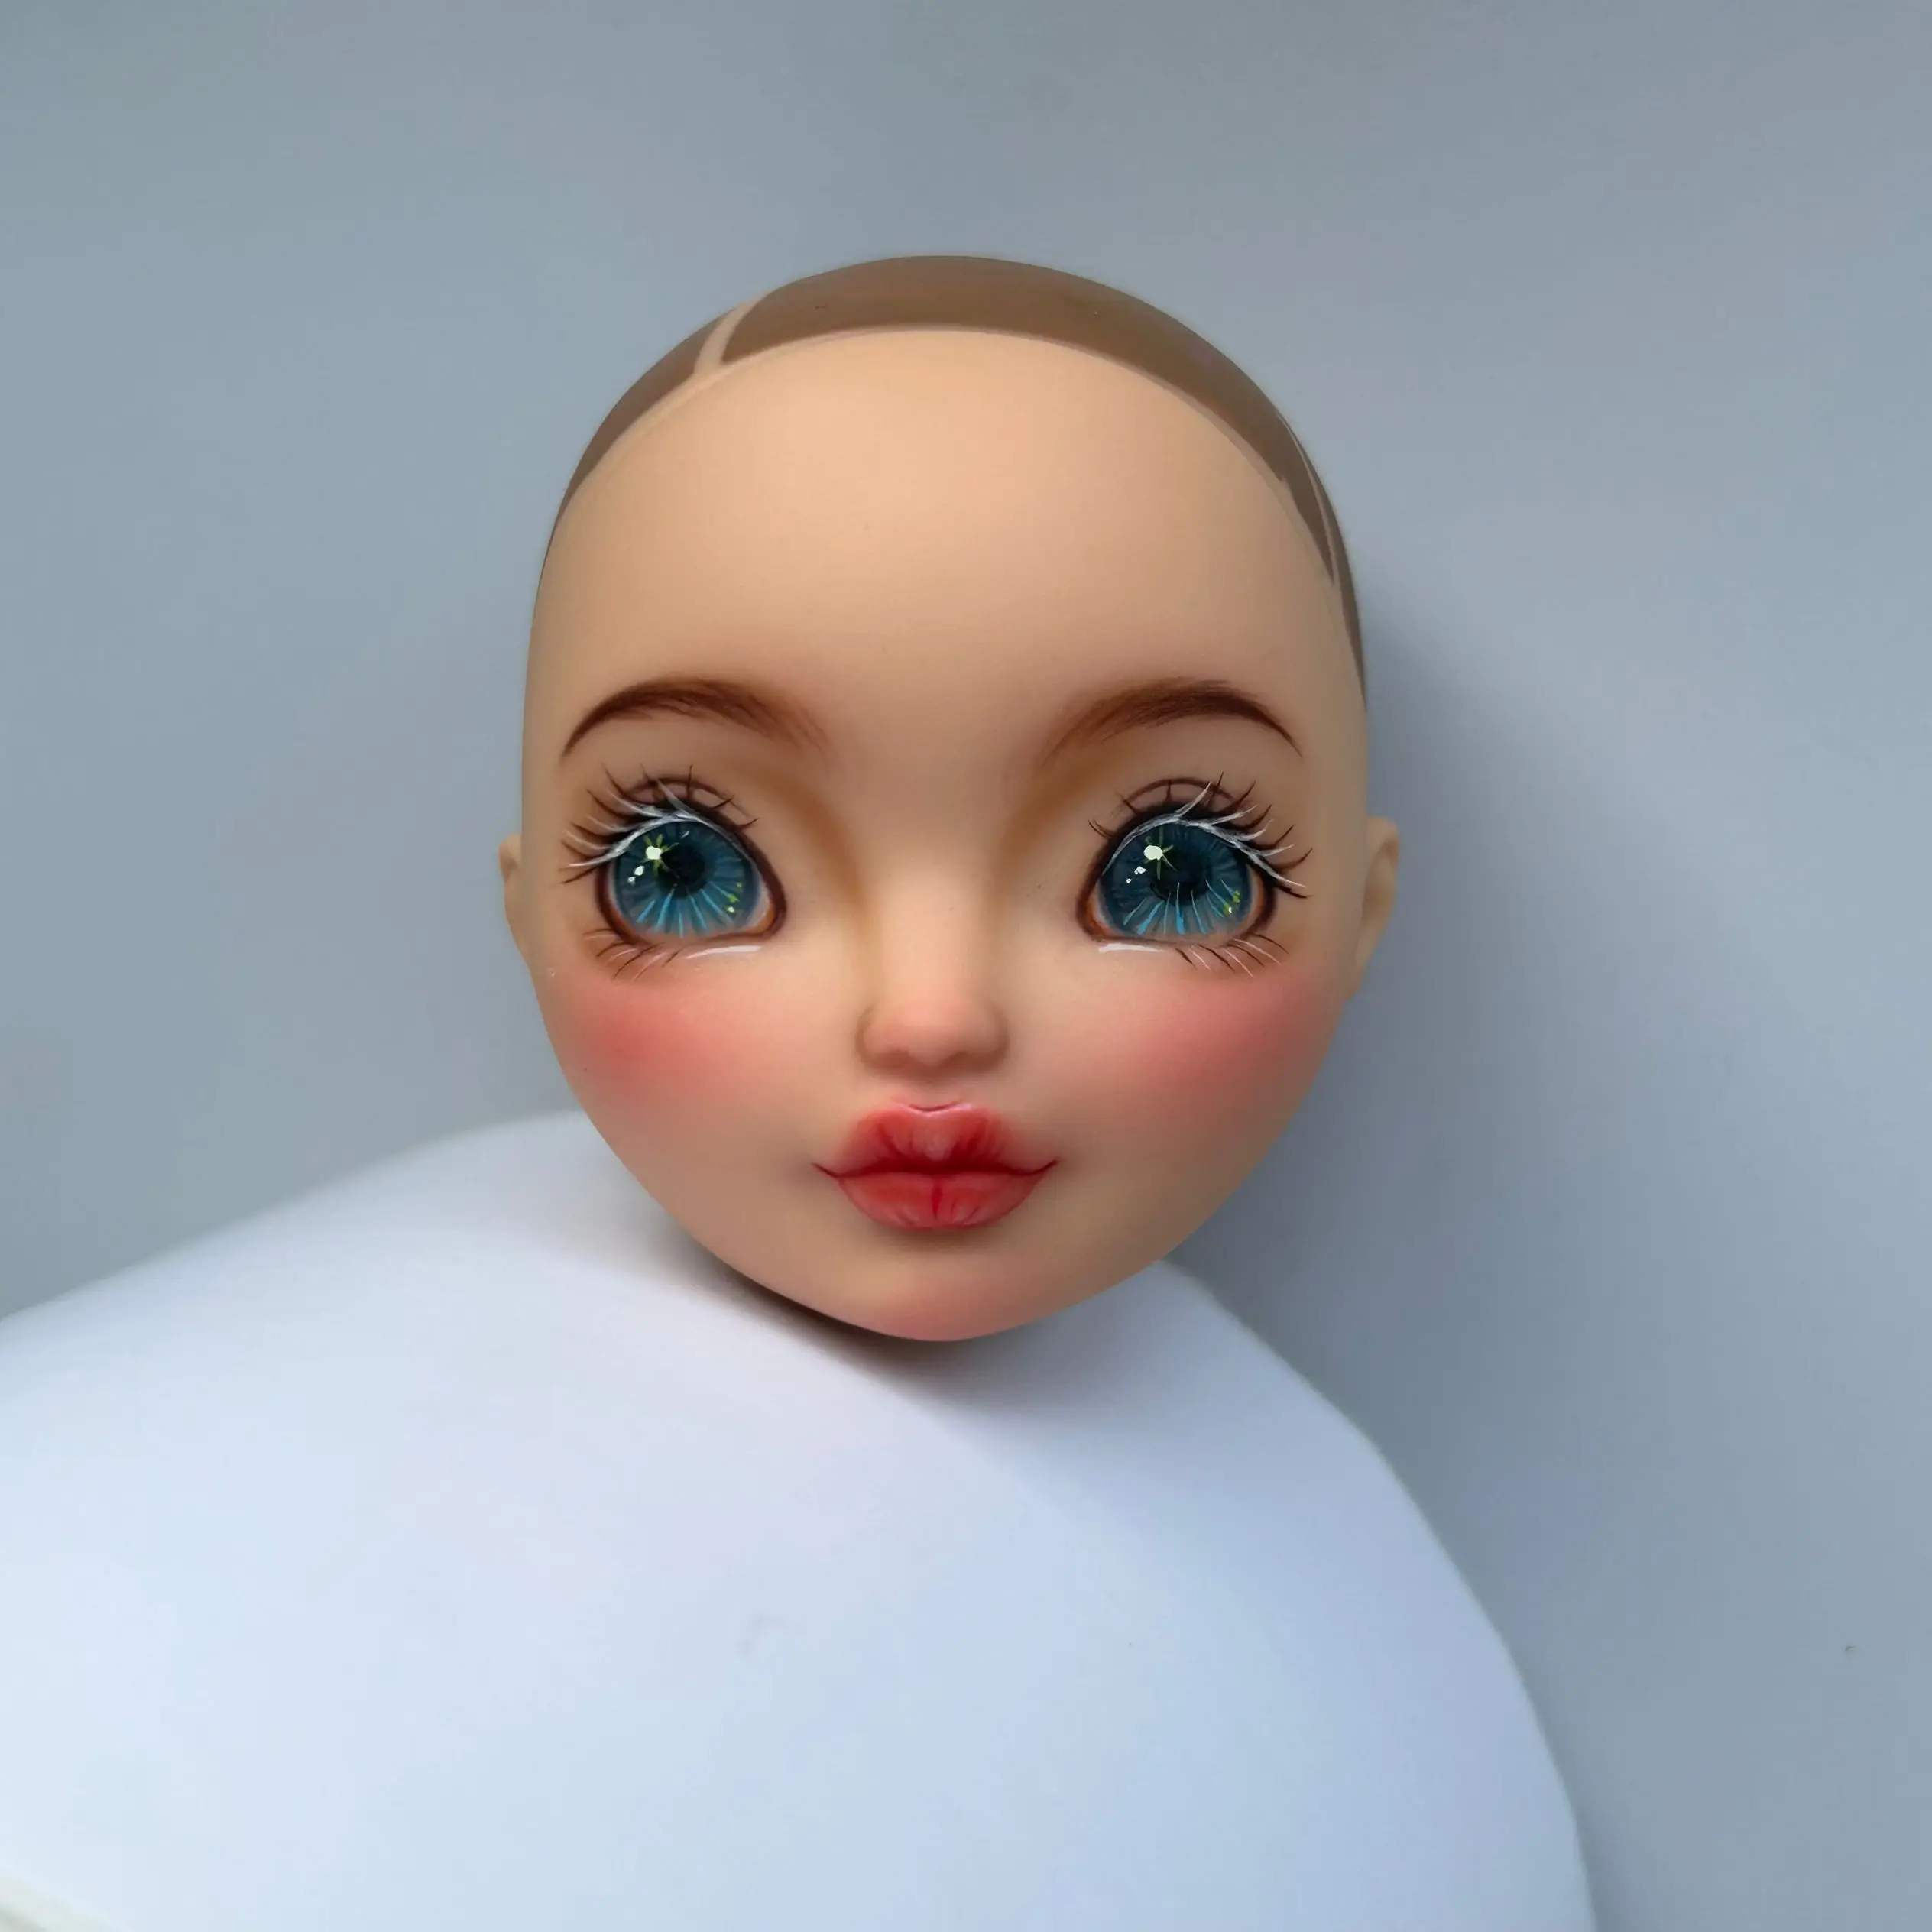 Venda limitada cabeça de boneca original mão desenho marca boneca cabeça ( maquiagem diy, não offical impresso maquiagem) - AliExpress